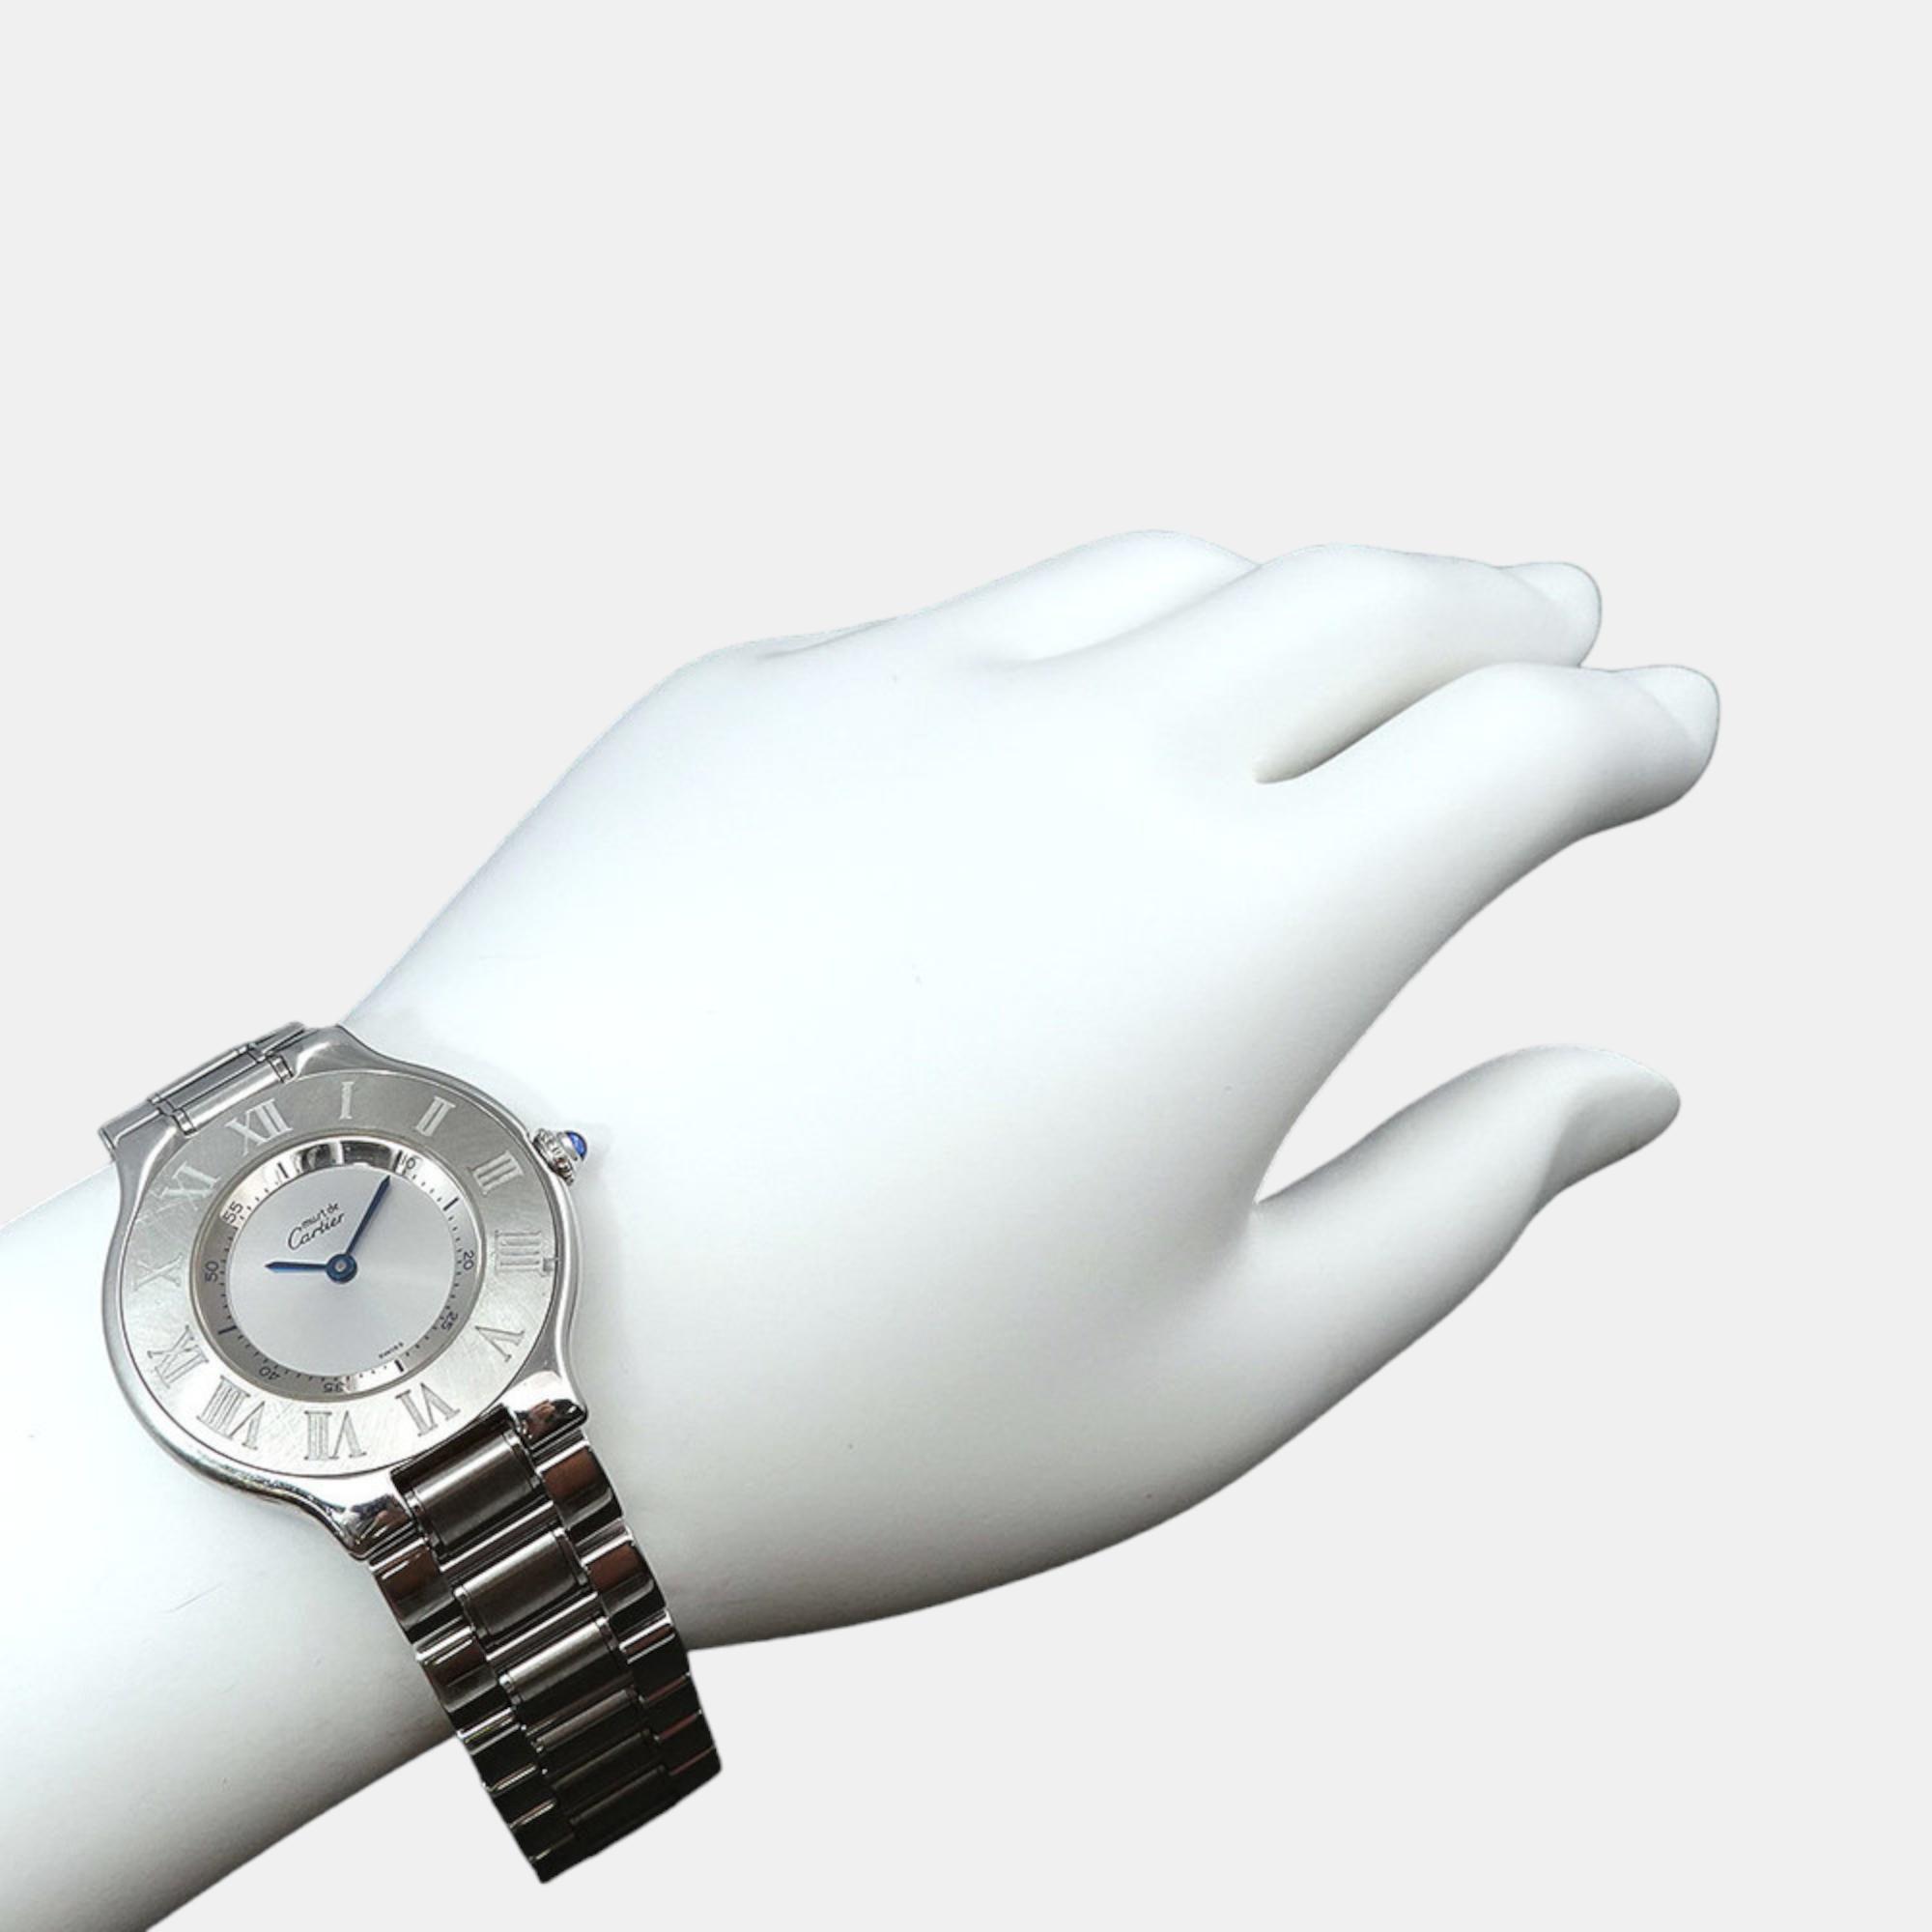 Cartier Silver Stainless Steel Must 21 De Cartier W10110T2 Quartz Men's Wristwatch 31 Mm